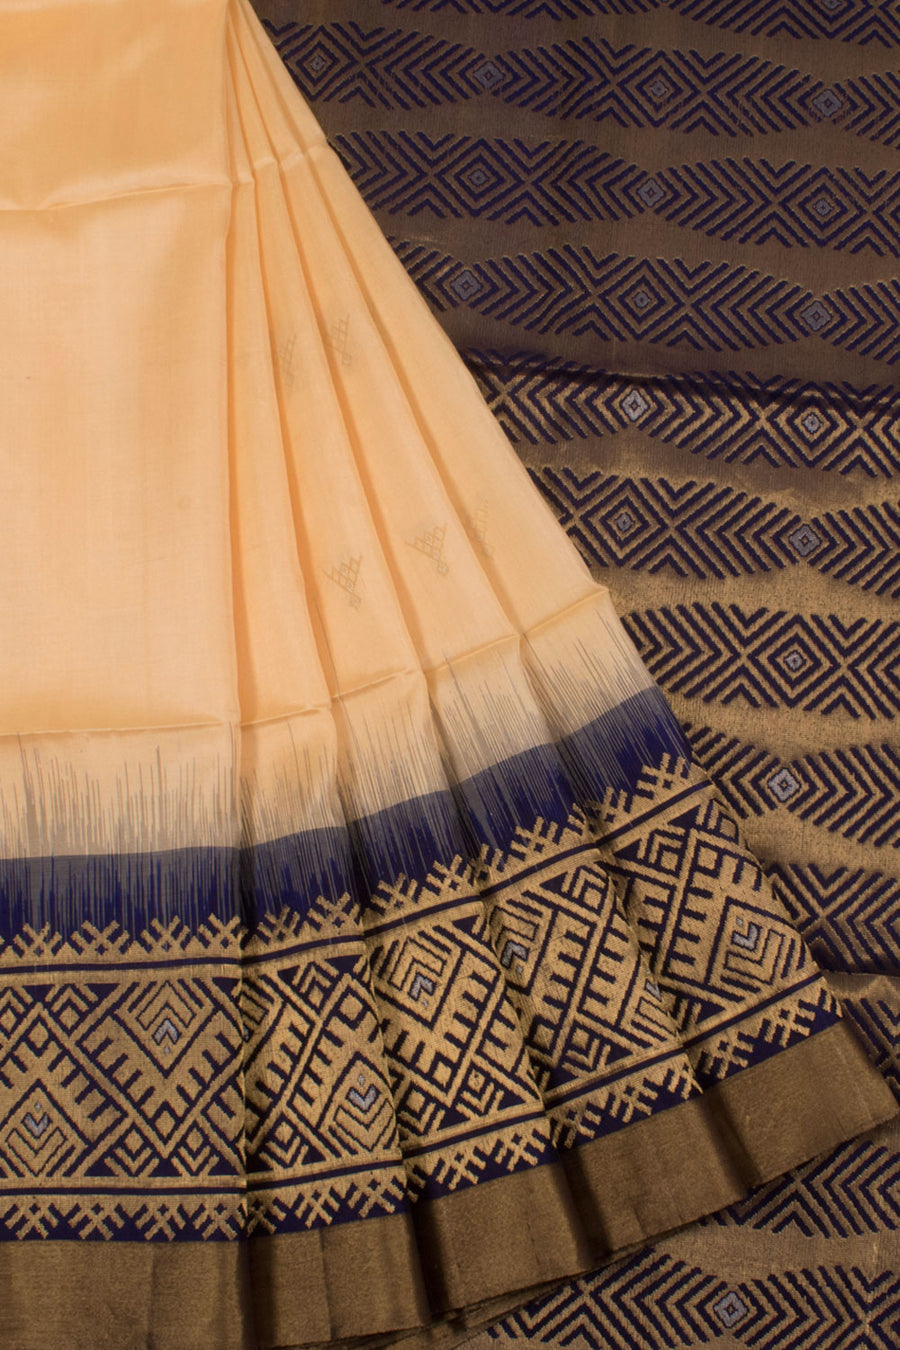 Handloom Kanjivaram Soft Silk Saree with Geometric Motifs and Silver, Gold Zari Motifs